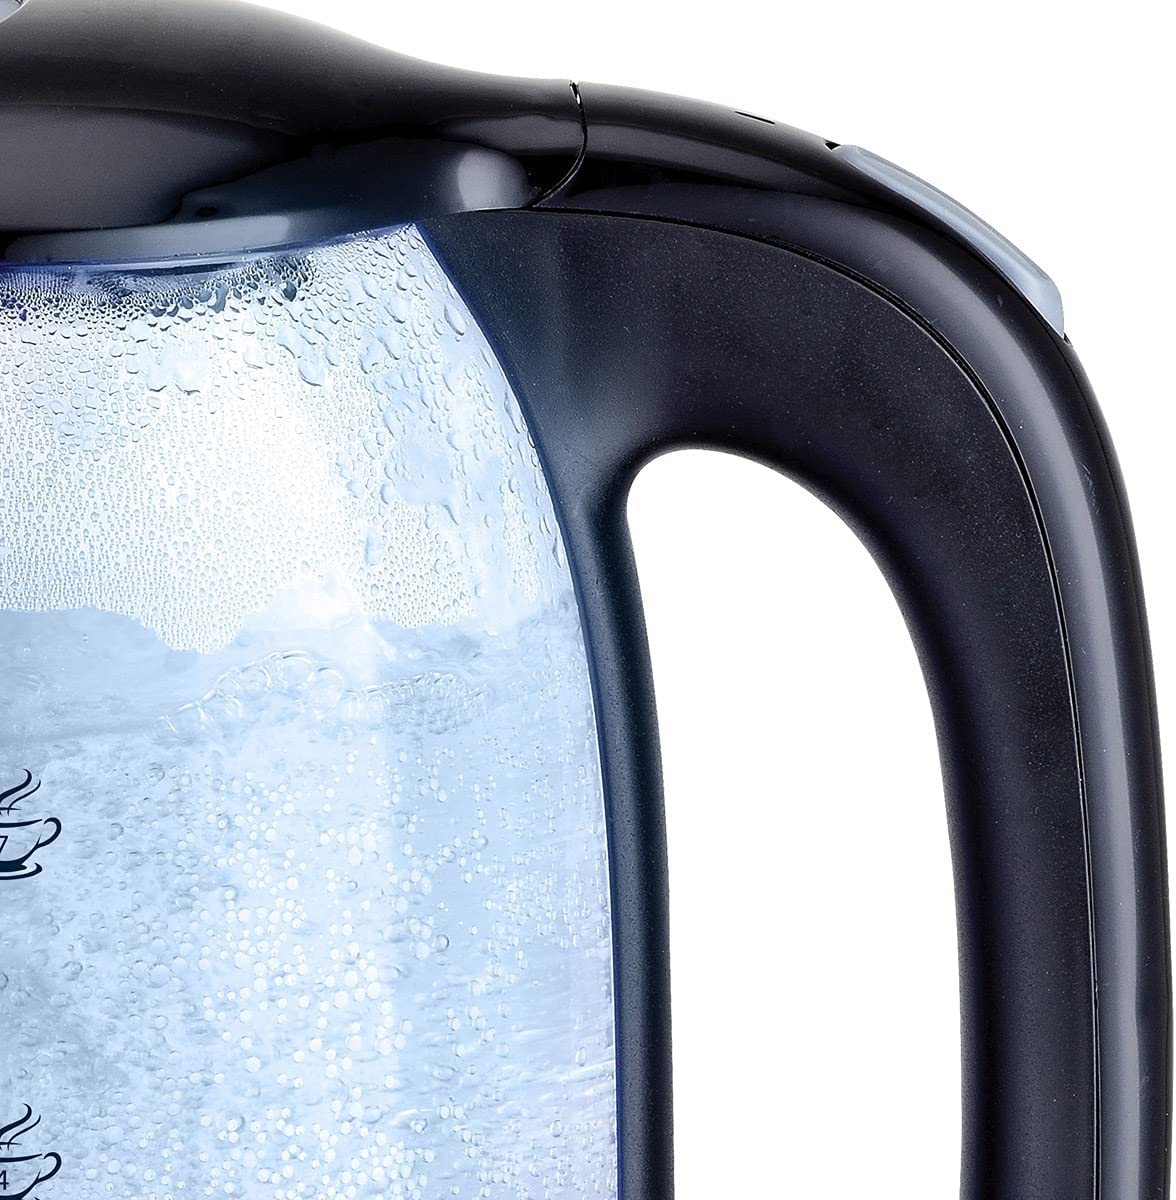 غلاية مياه زجاج سوناي كلاسيك، 1.7 لتر، أسود - MAR.3752